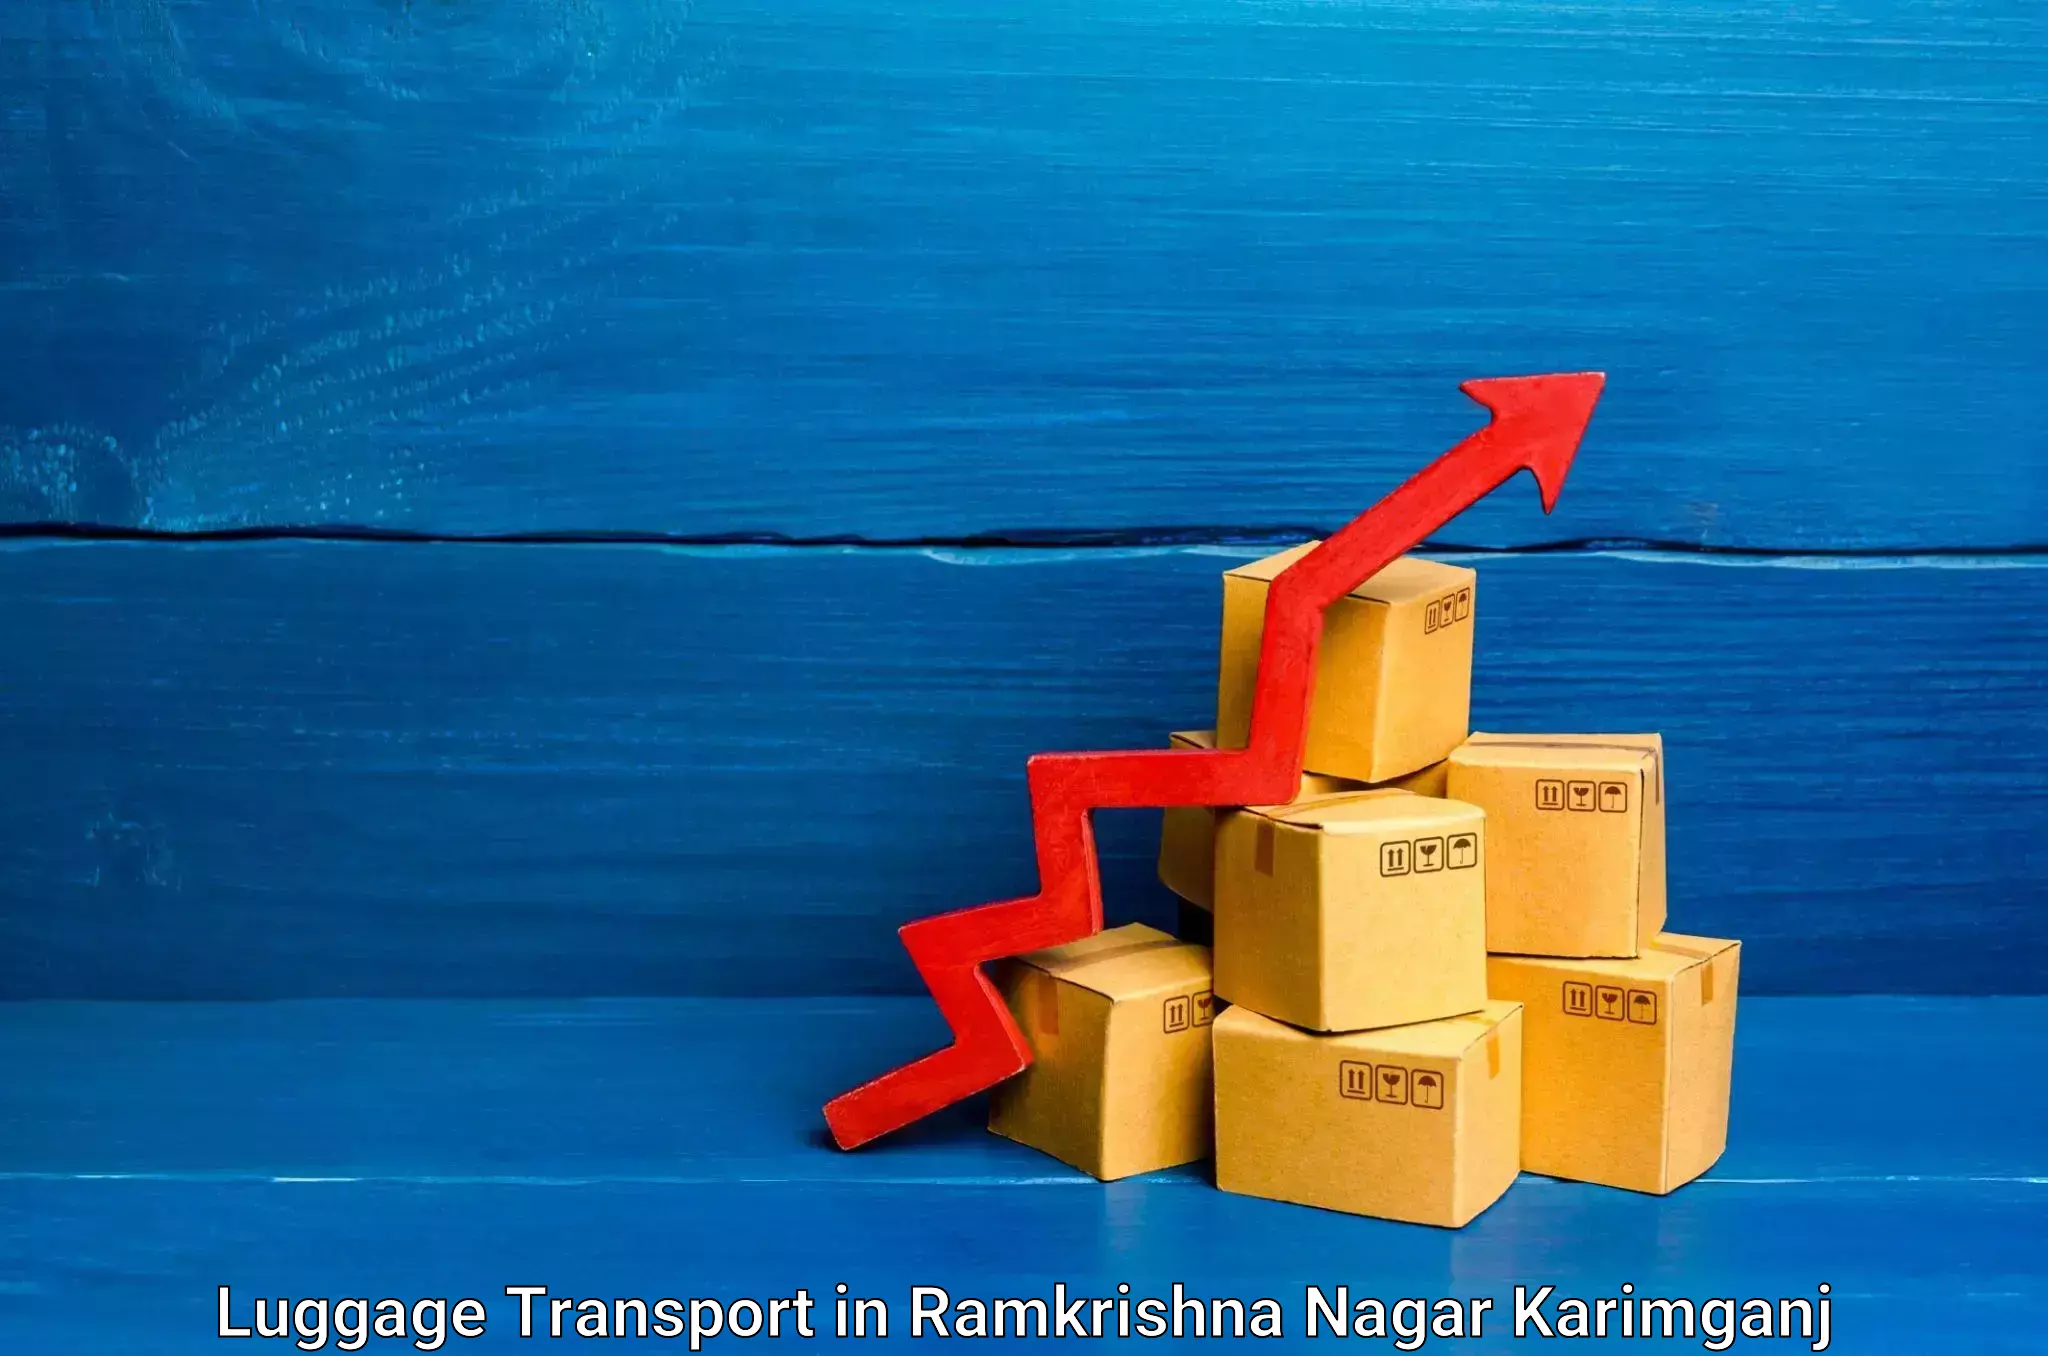 Regional luggage transport in Ramkrishna Nagar Karimganj